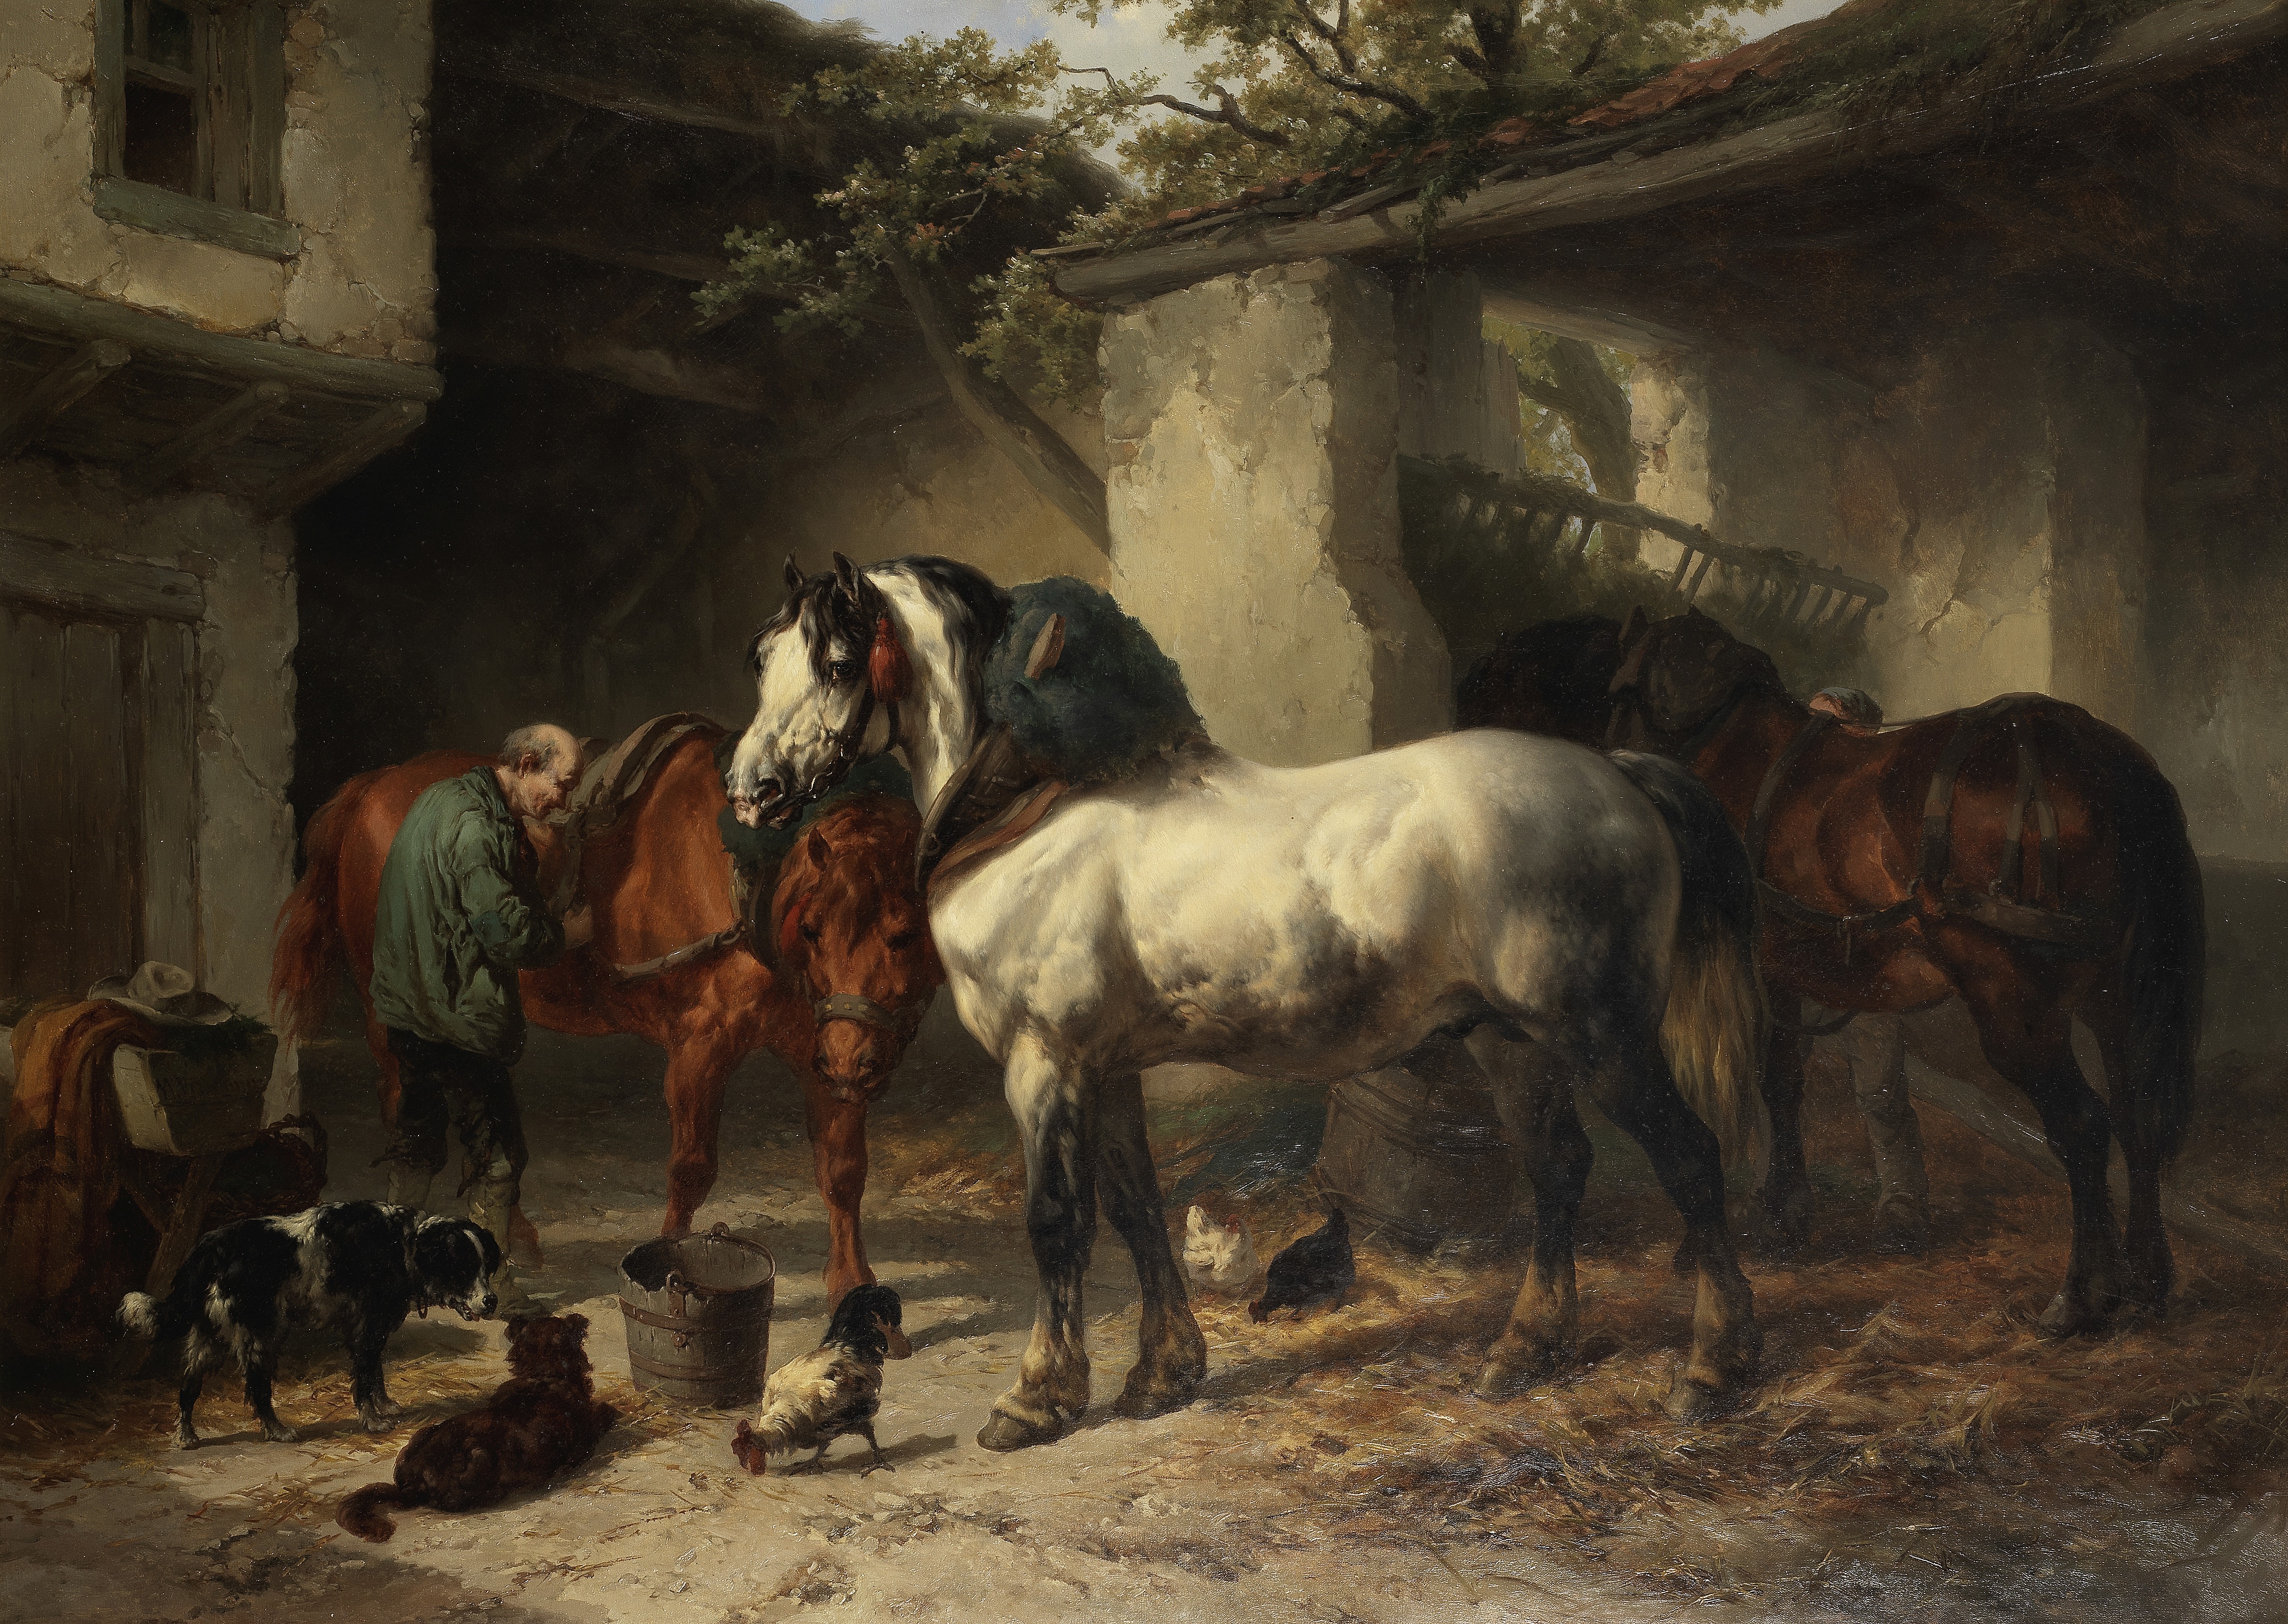 Wouter Verschuur (Dutch, 1812-1874) Horses in a Stableyard